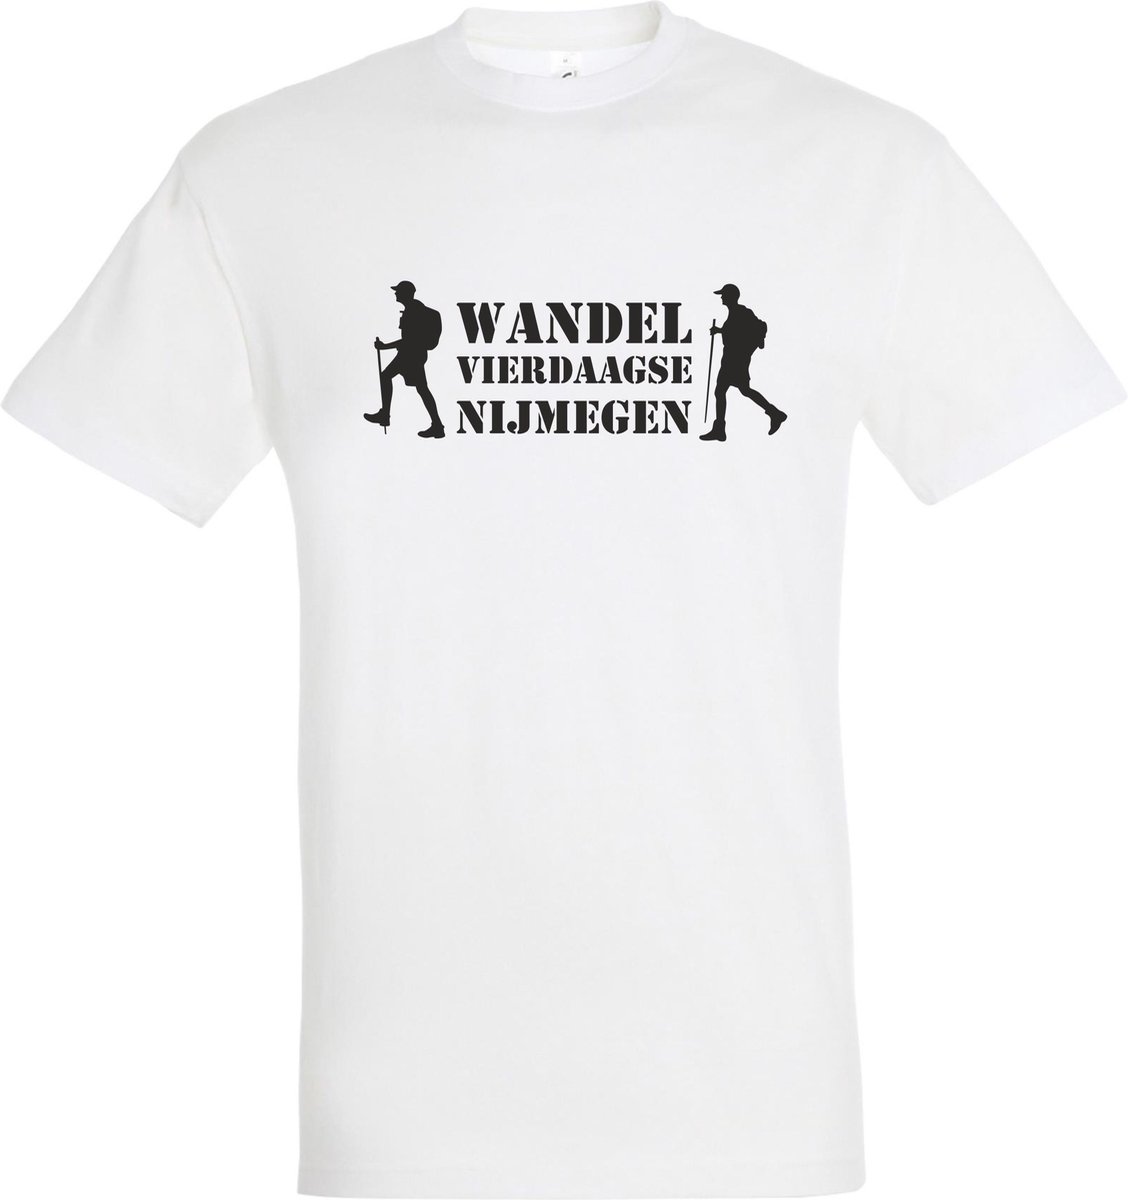 T-shirt Wandel vierdaagse Nijmegen met wandelaars |Wandelvierdaagse | vierdaagse Nijmegen | Roze woensdag | Wit | maat S